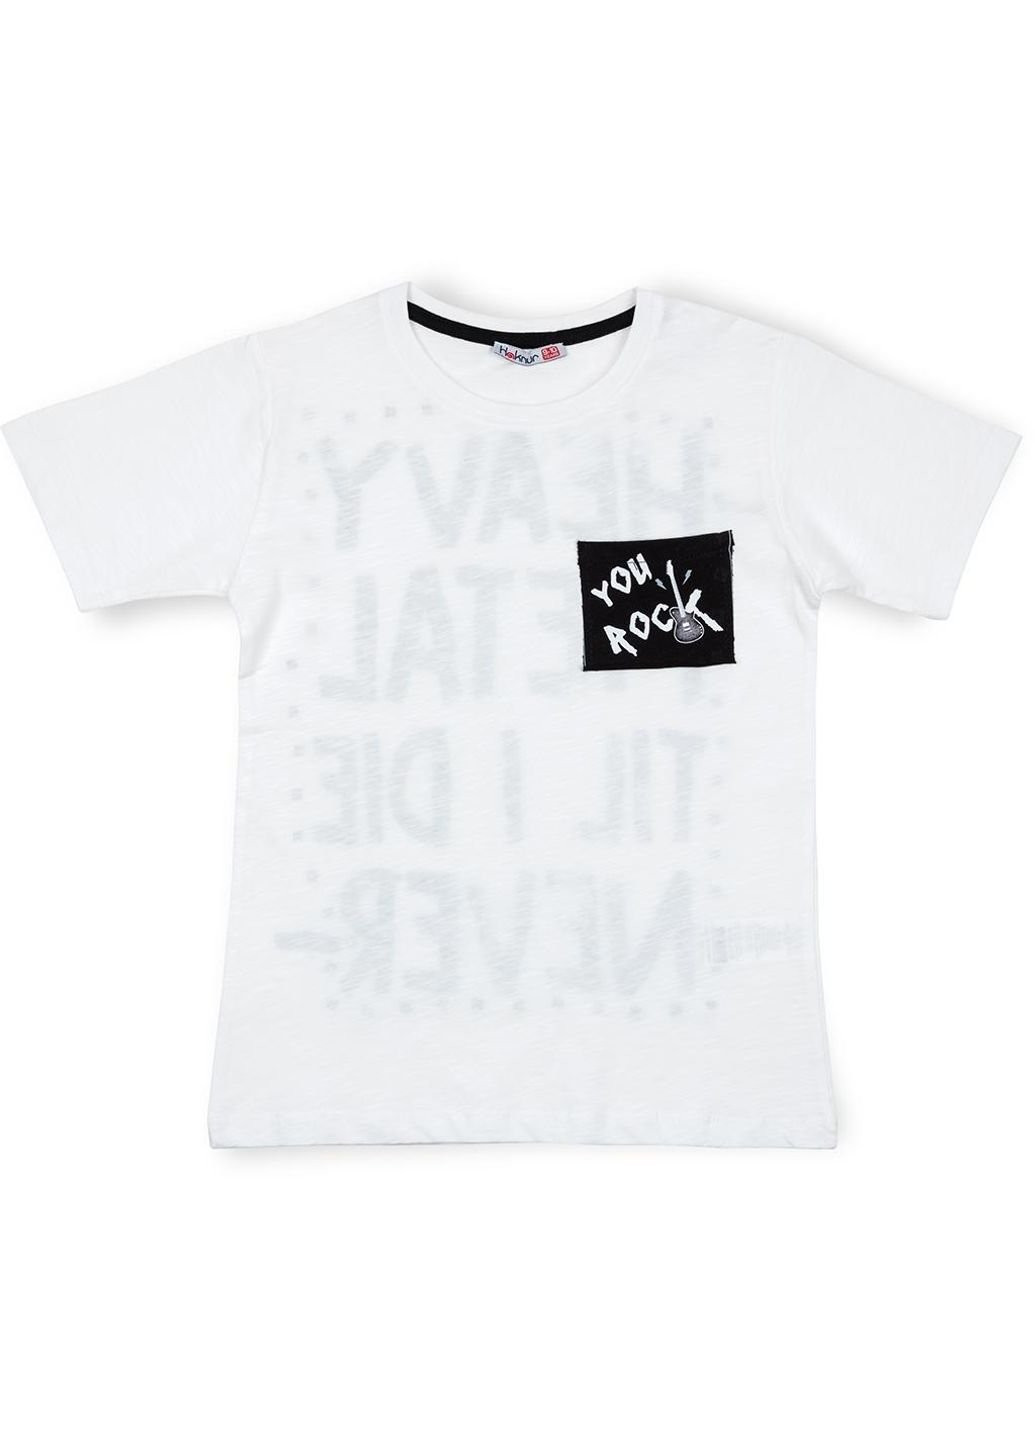 Белая летняя футболка детская "rock" (7181-134b-white) Haknur